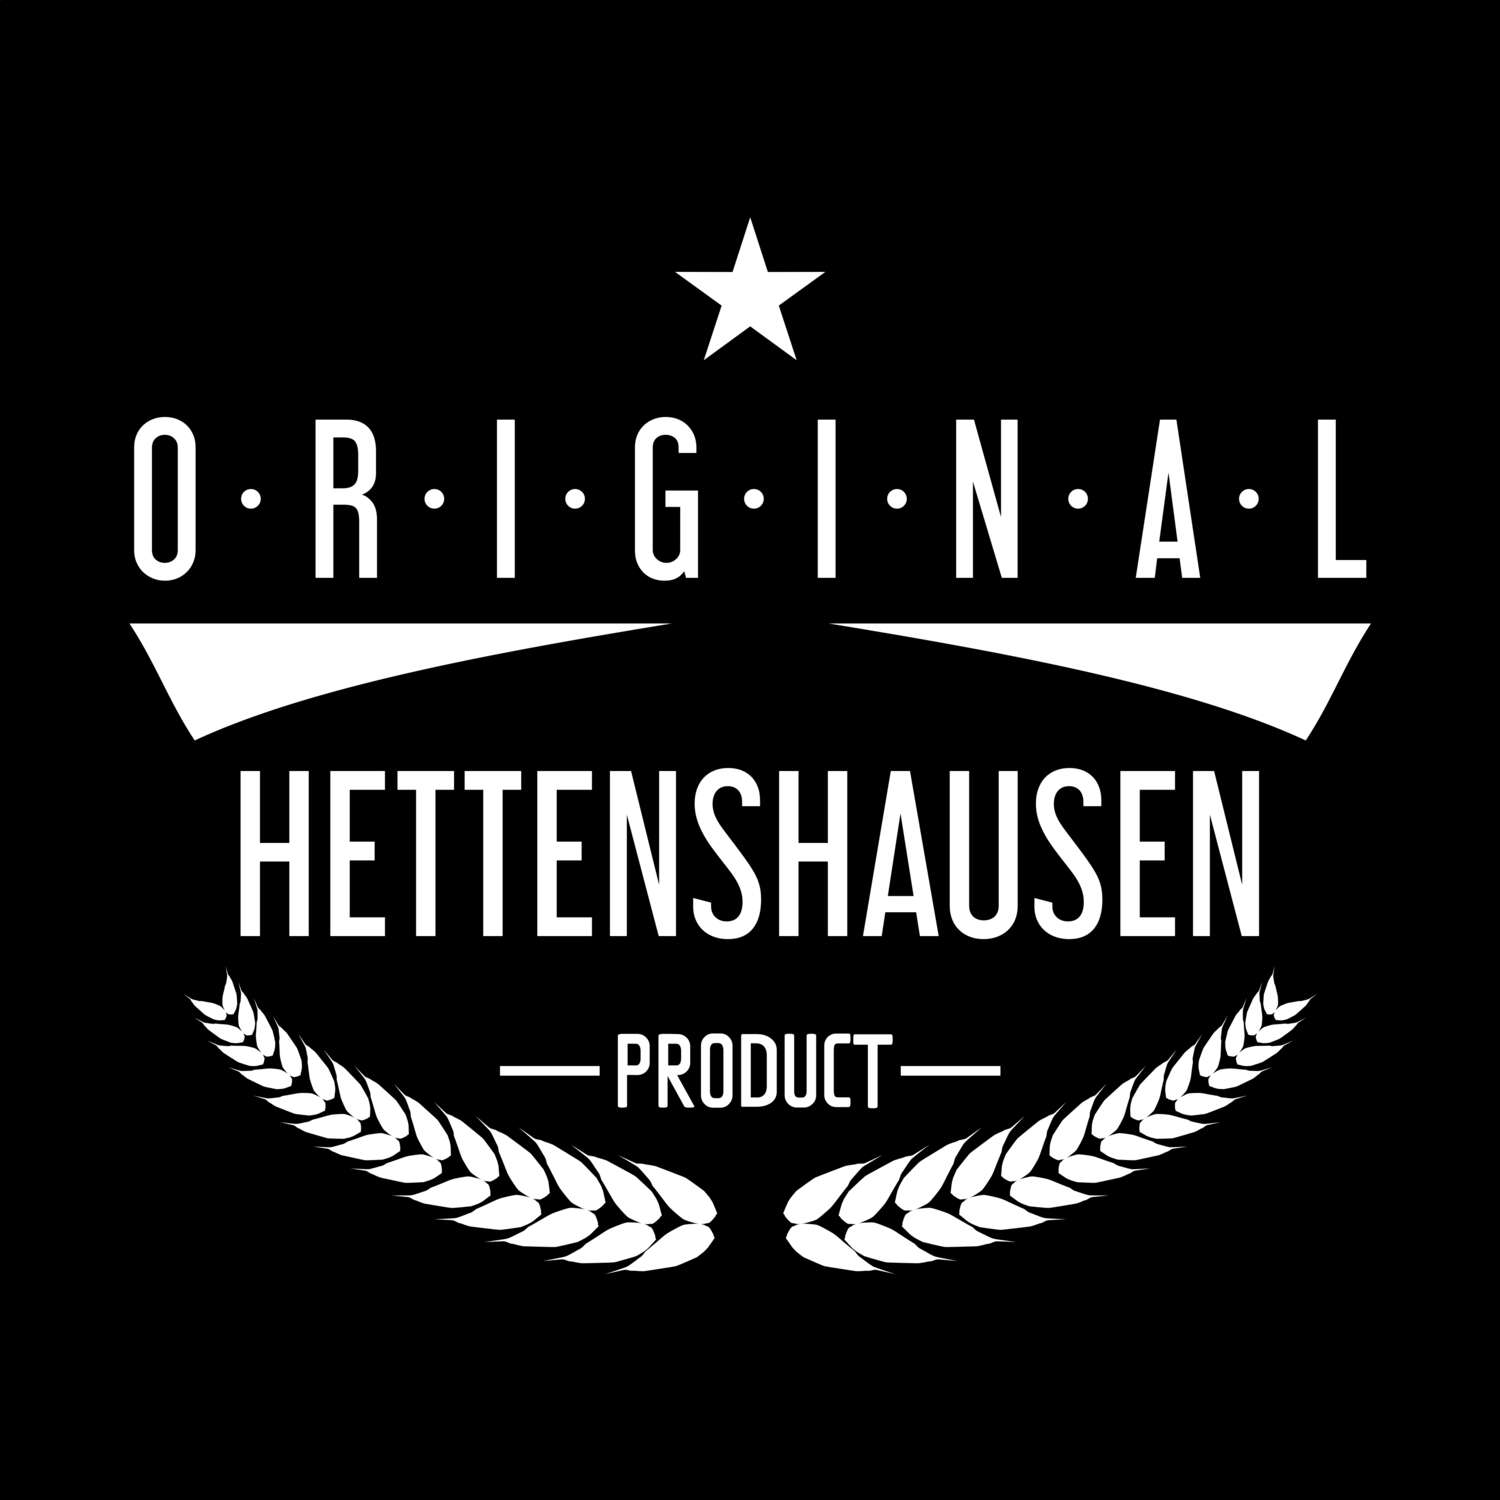 Hettenshausen T-Shirt »Original Product«